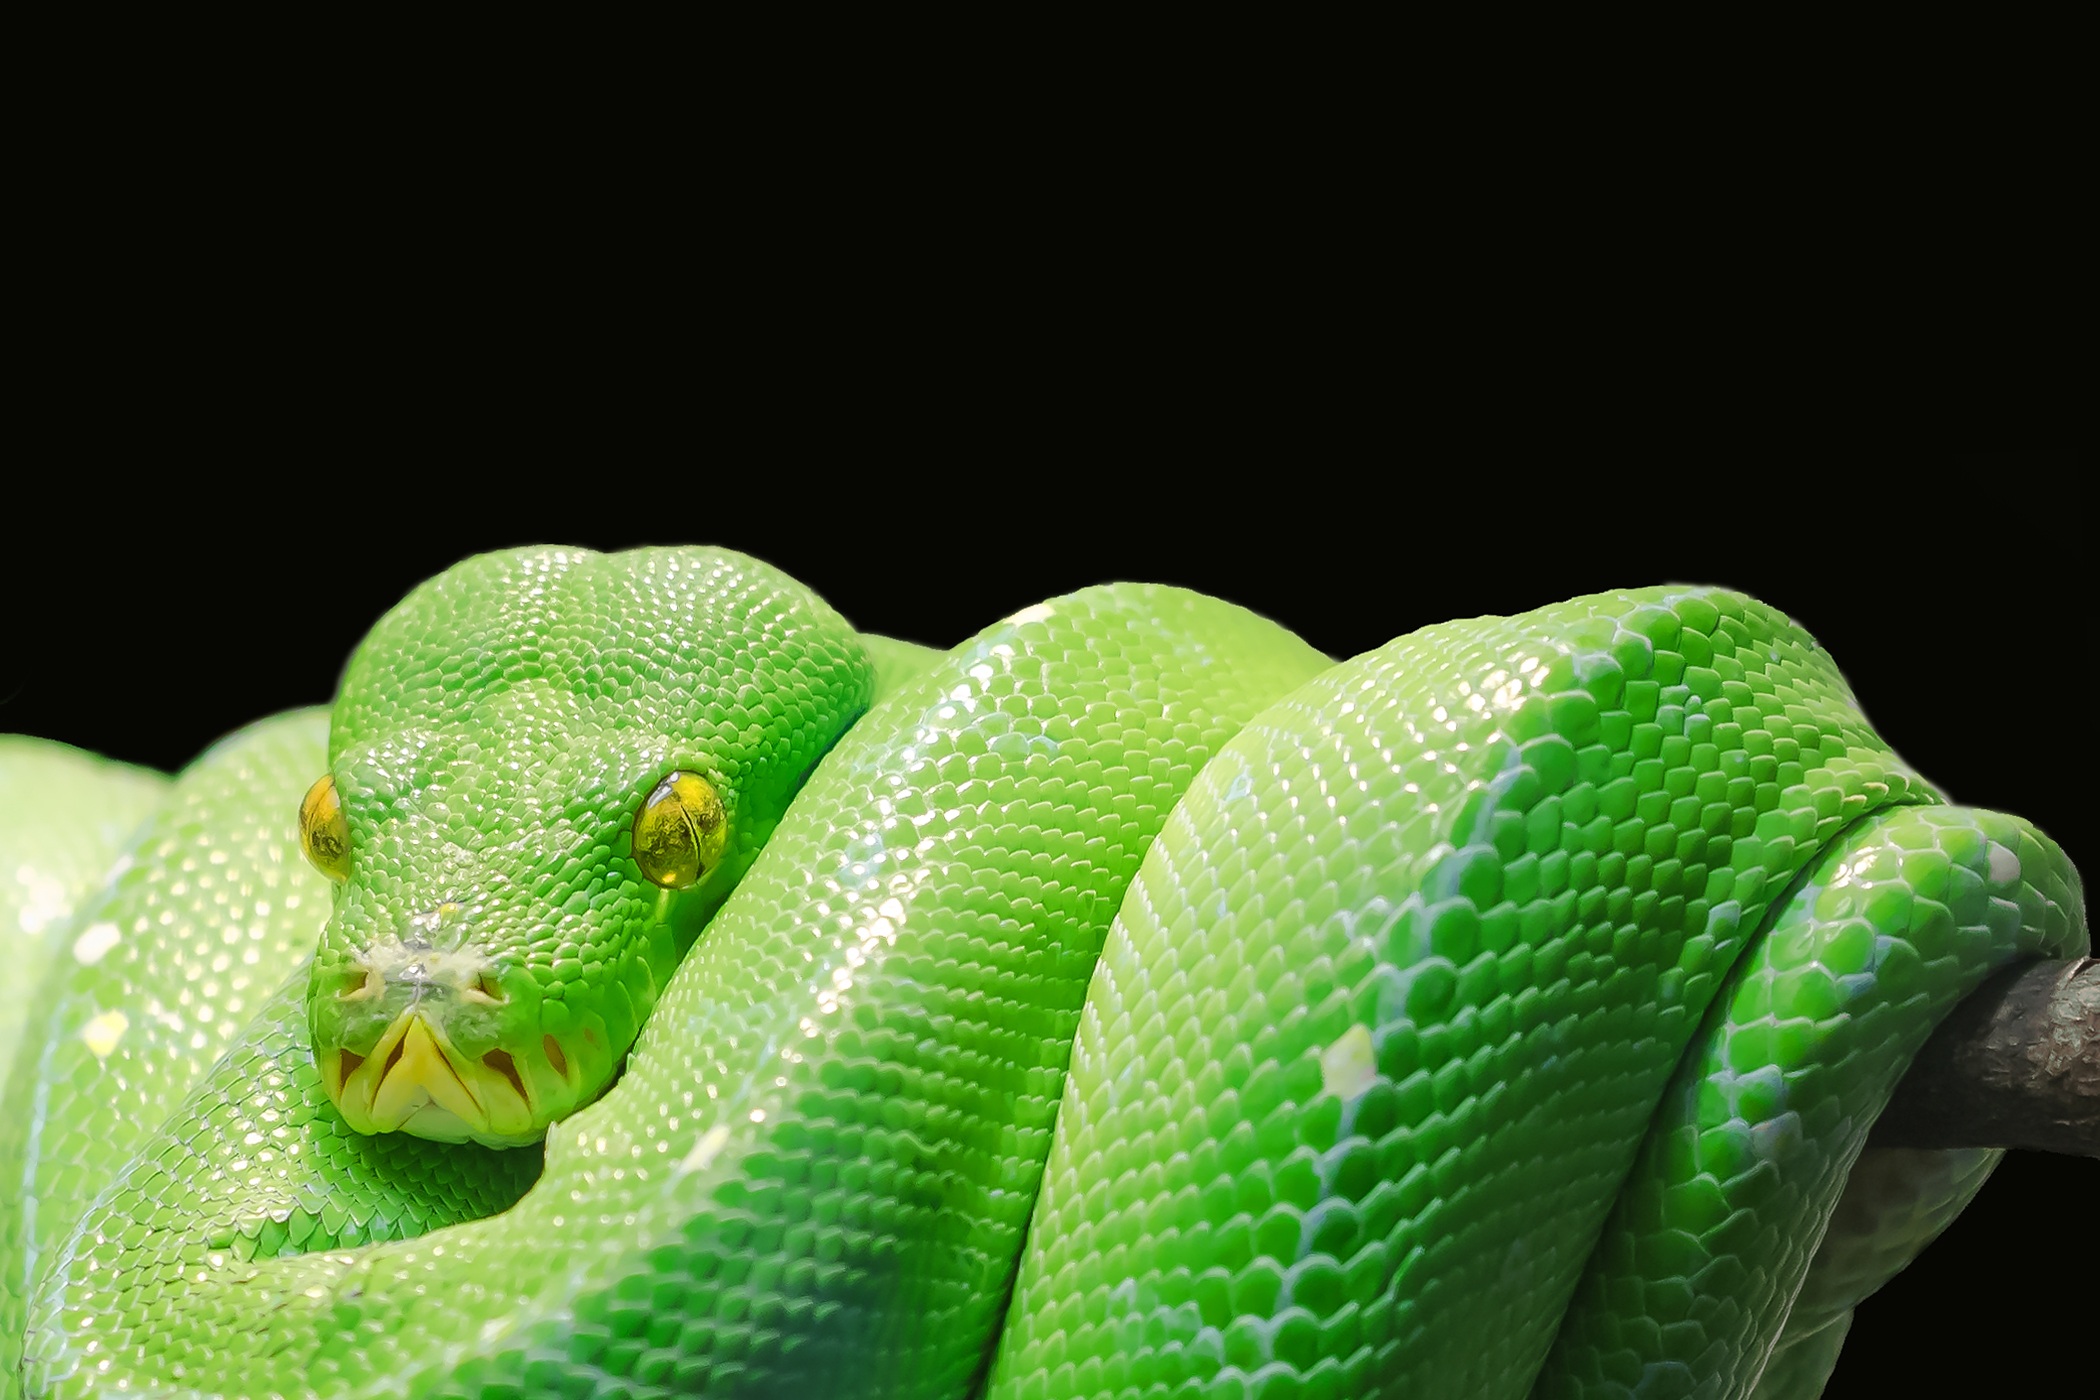 Скачать обои бесплатно Животные, Зеленый, Змея, Рептилии, Питон картинка на рабочий стол ПК